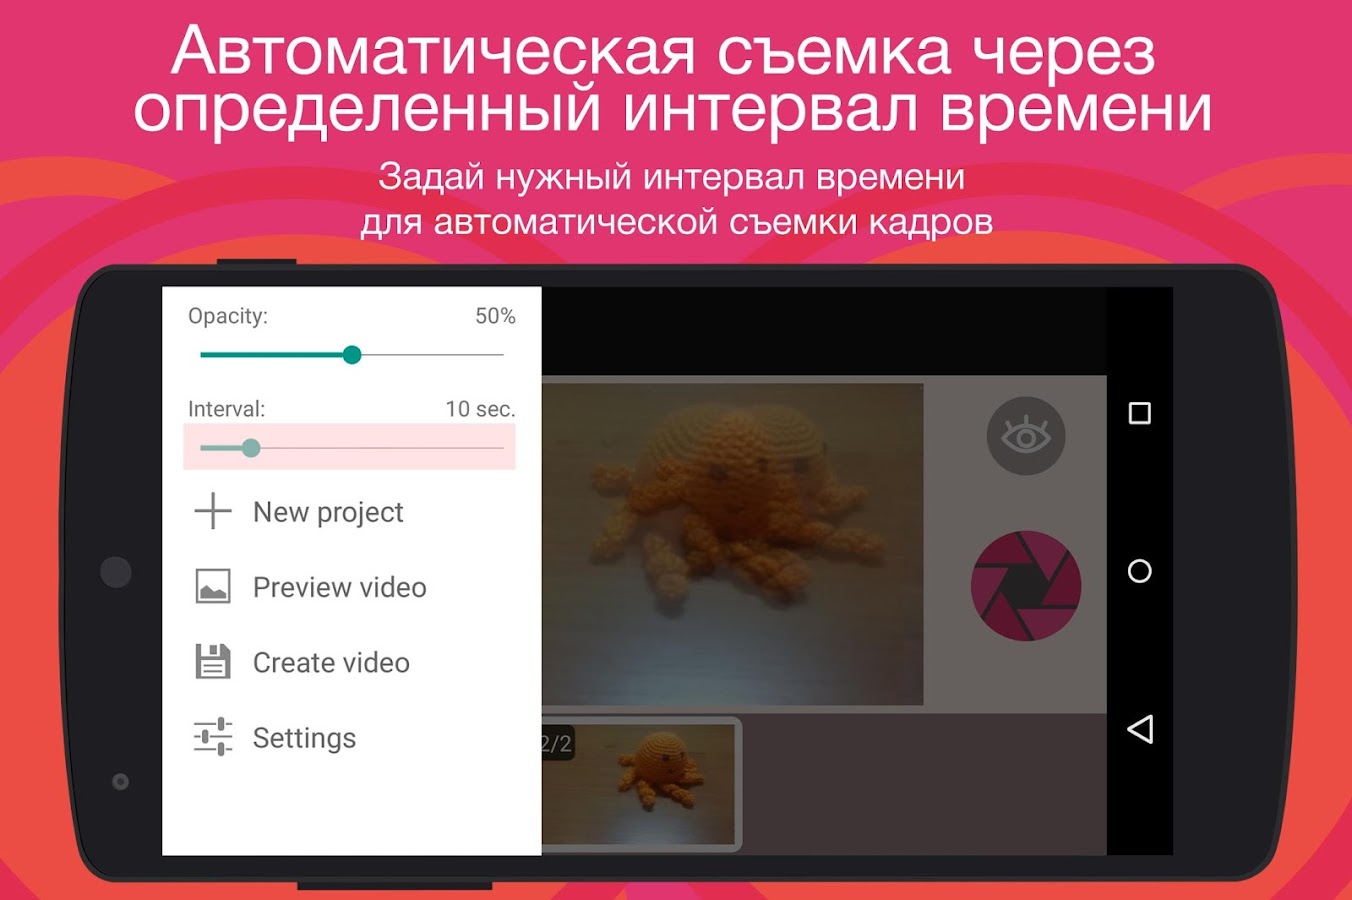 Покадровая фотосъемка видео — приложение на Android